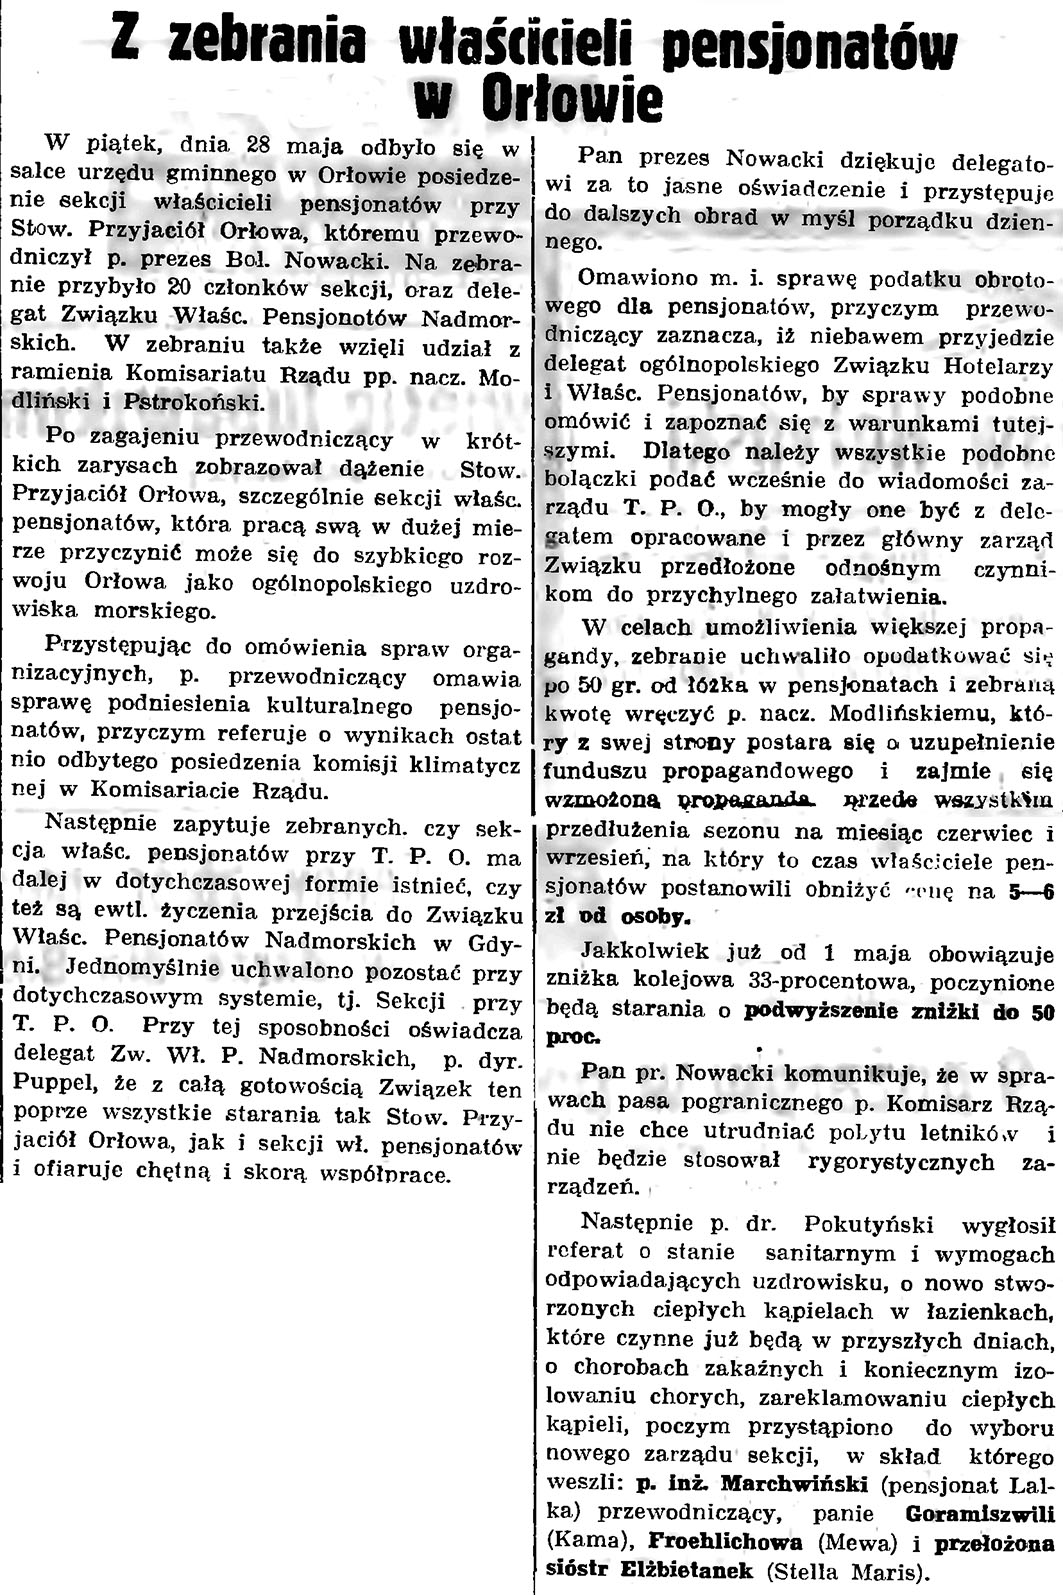 Z zebrania właścicieli pensjonatów w Orłowie // Gazeta Gdańska. - 1937, nr 123, s. 8